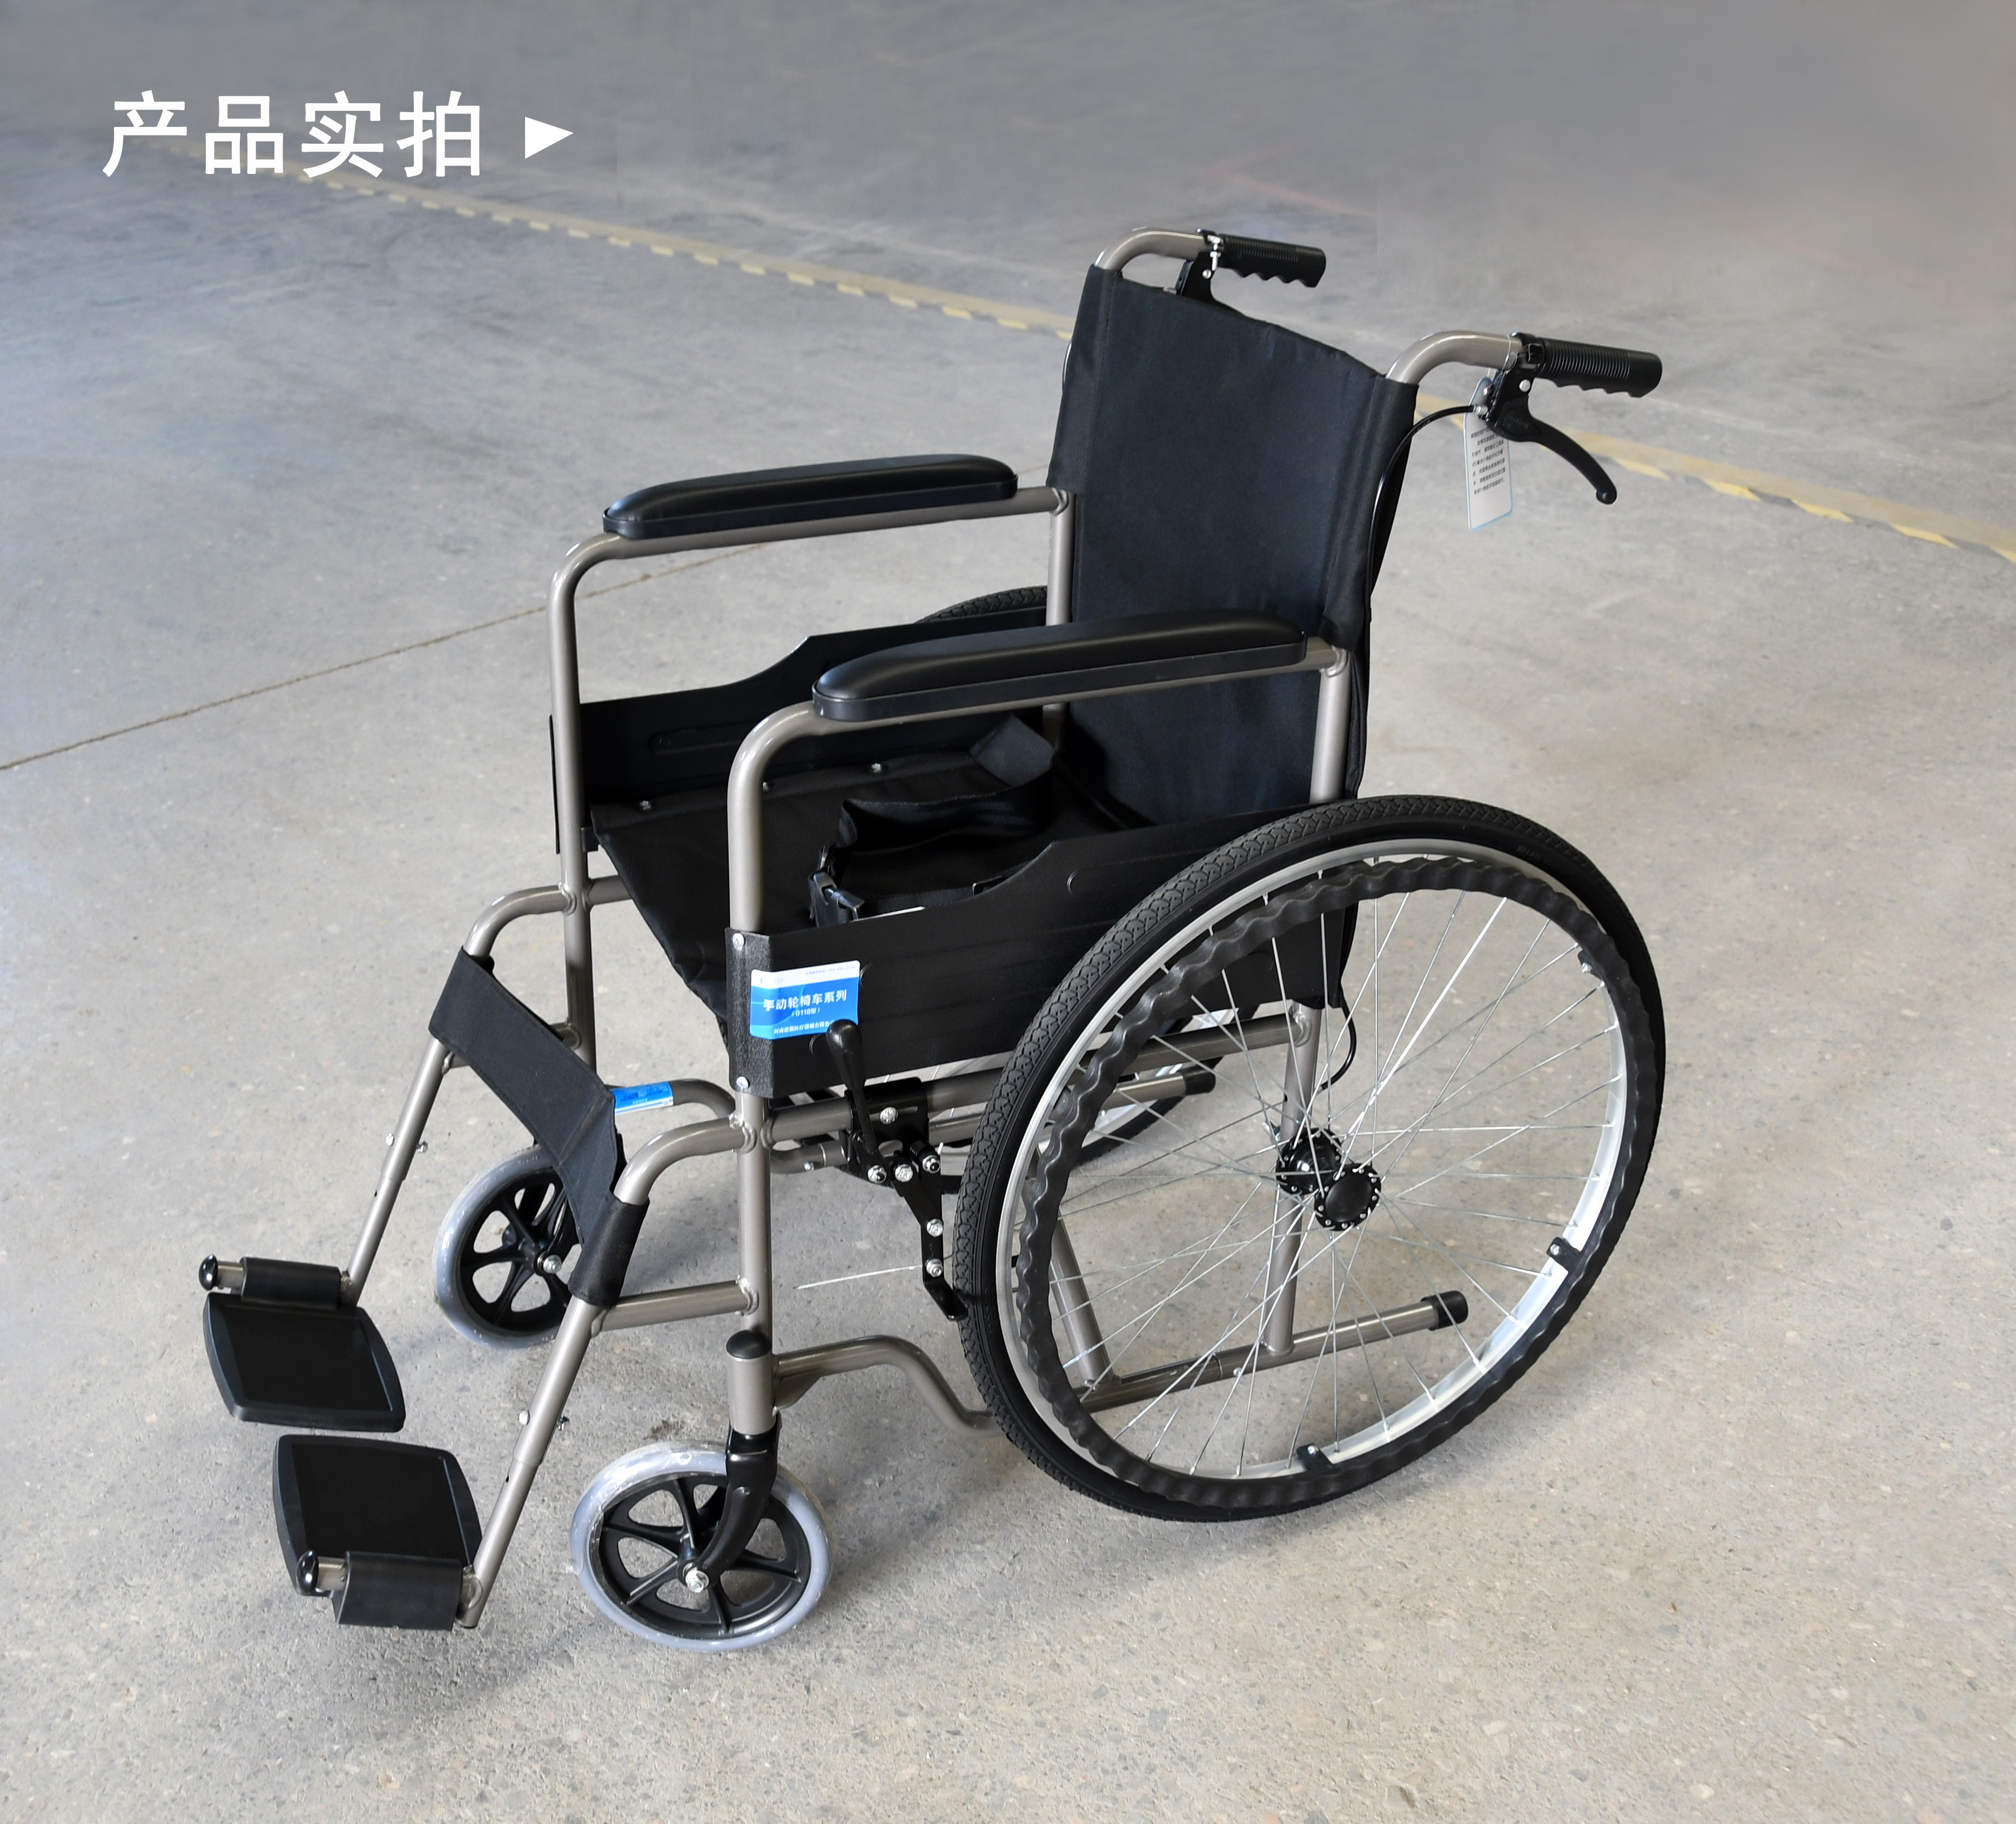 根据使用者的体型选择合适的手动轮椅车